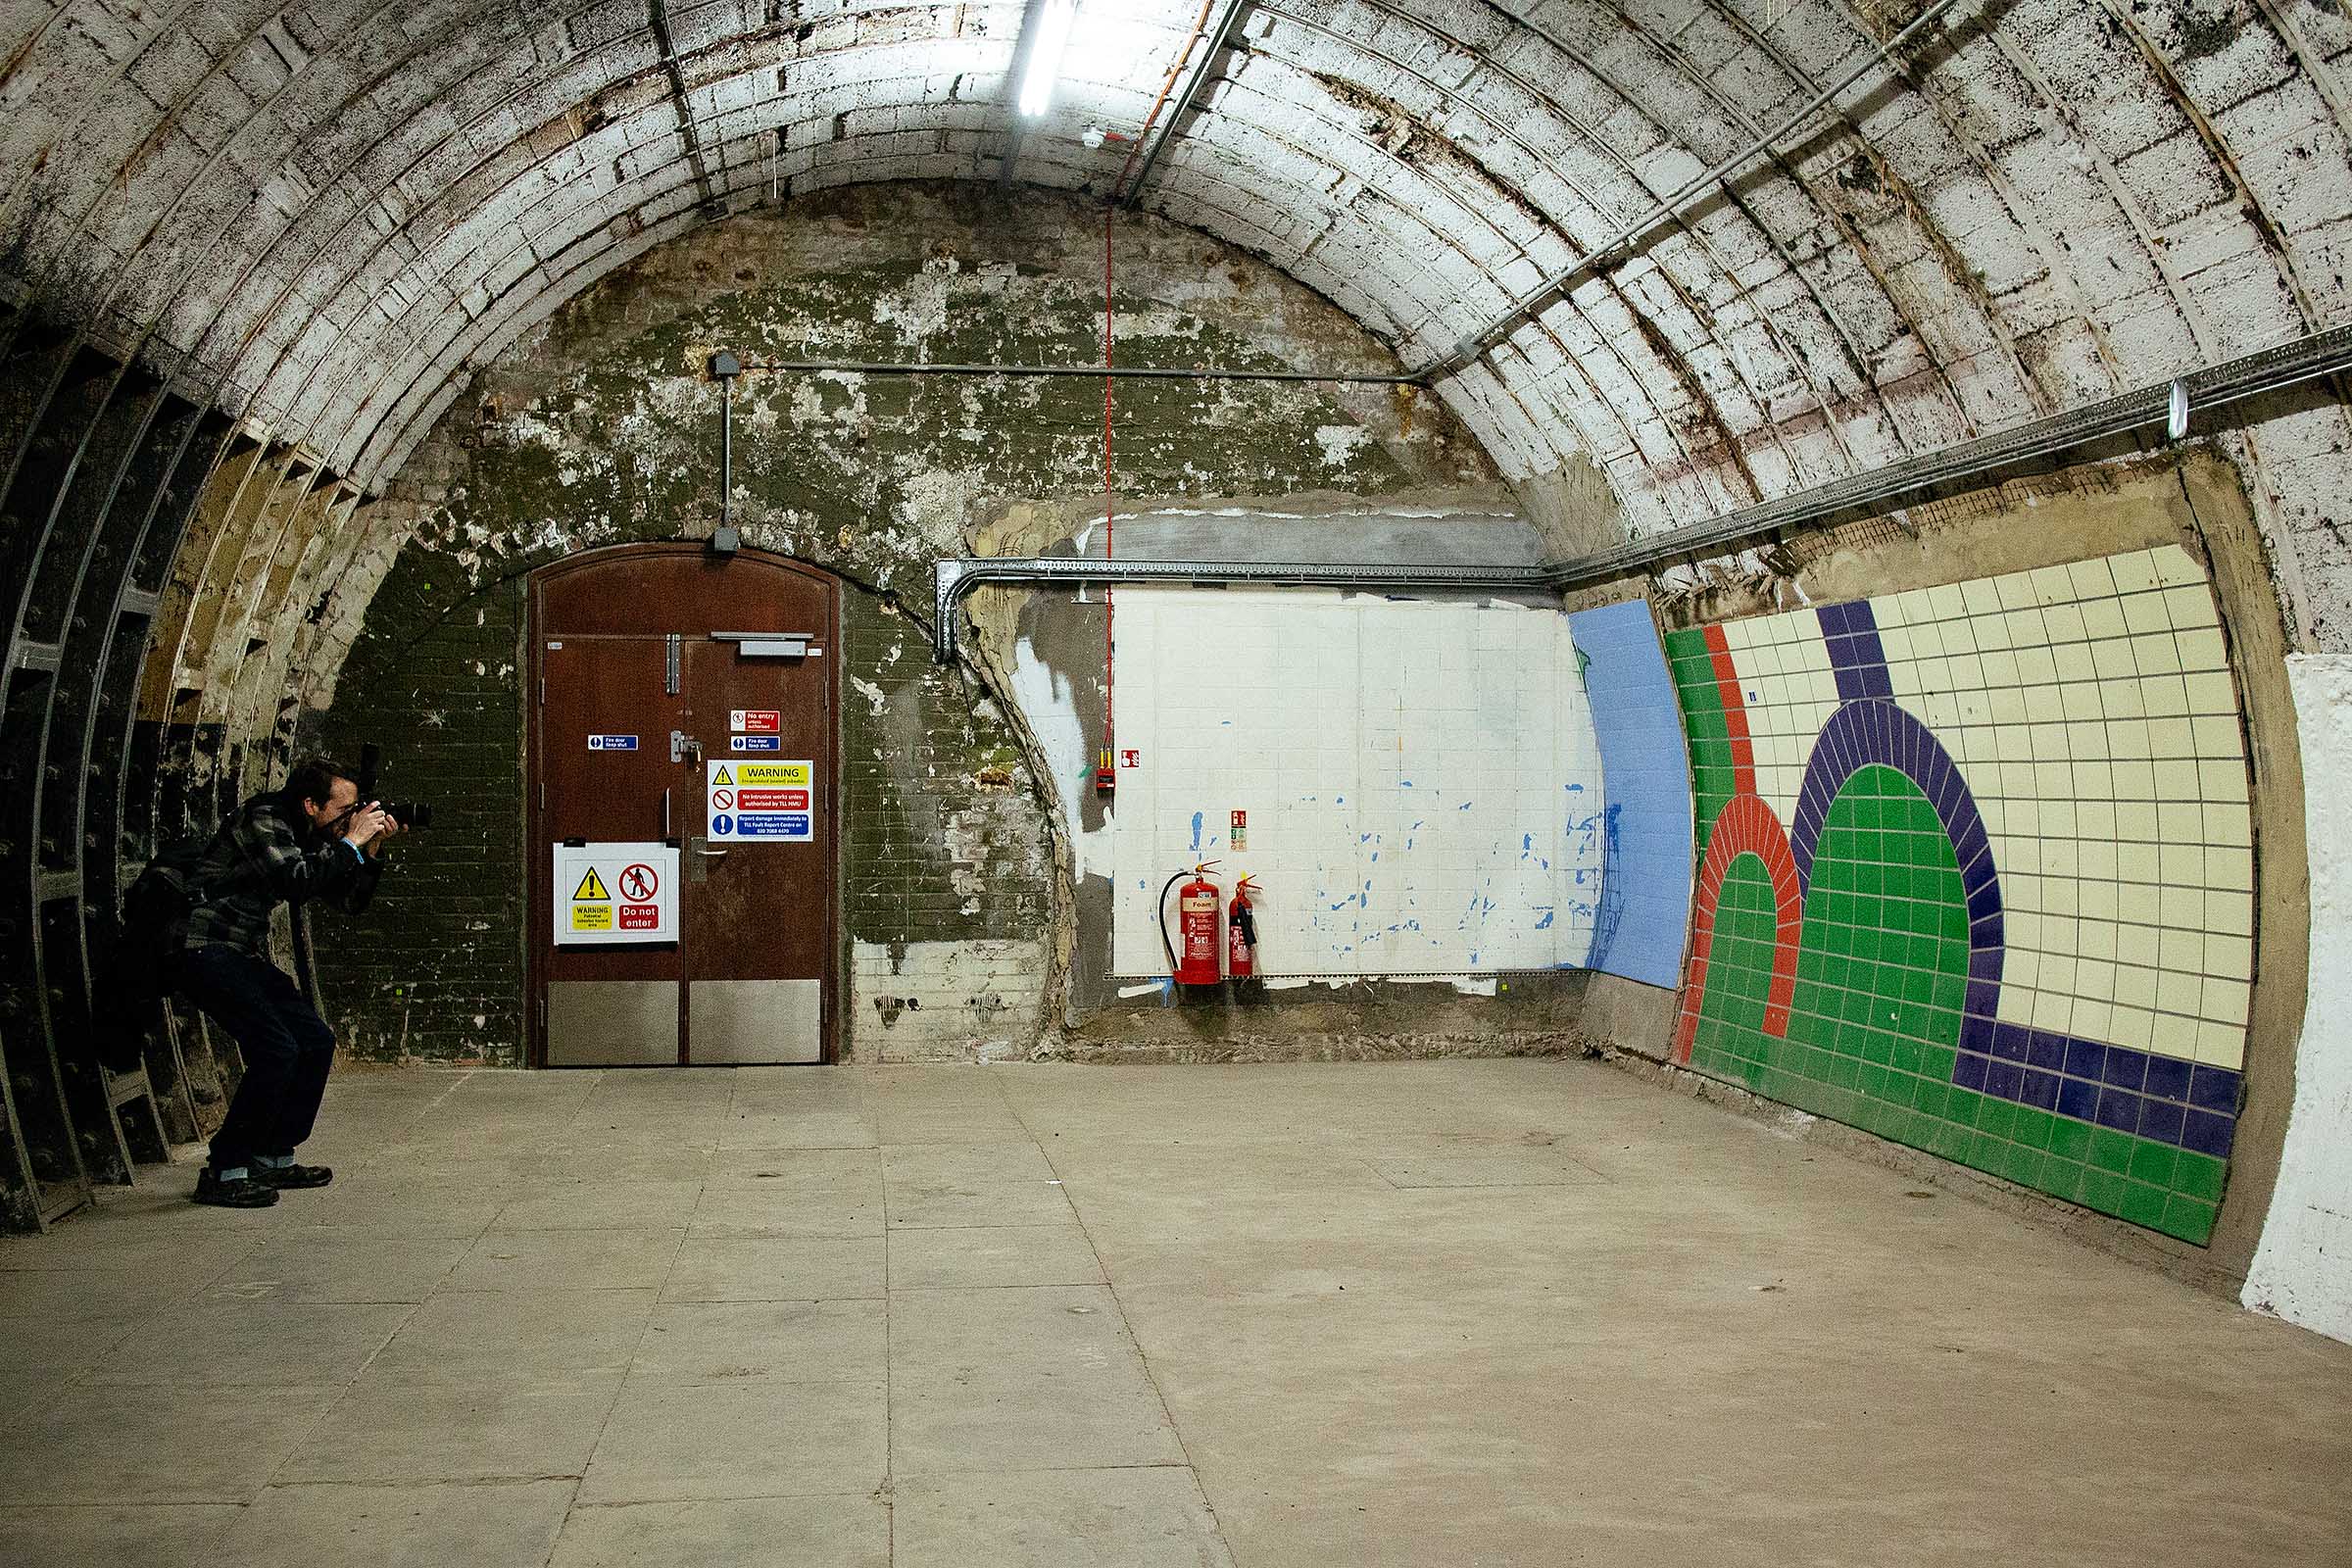 Eastern platform, Aldwych disused tube station